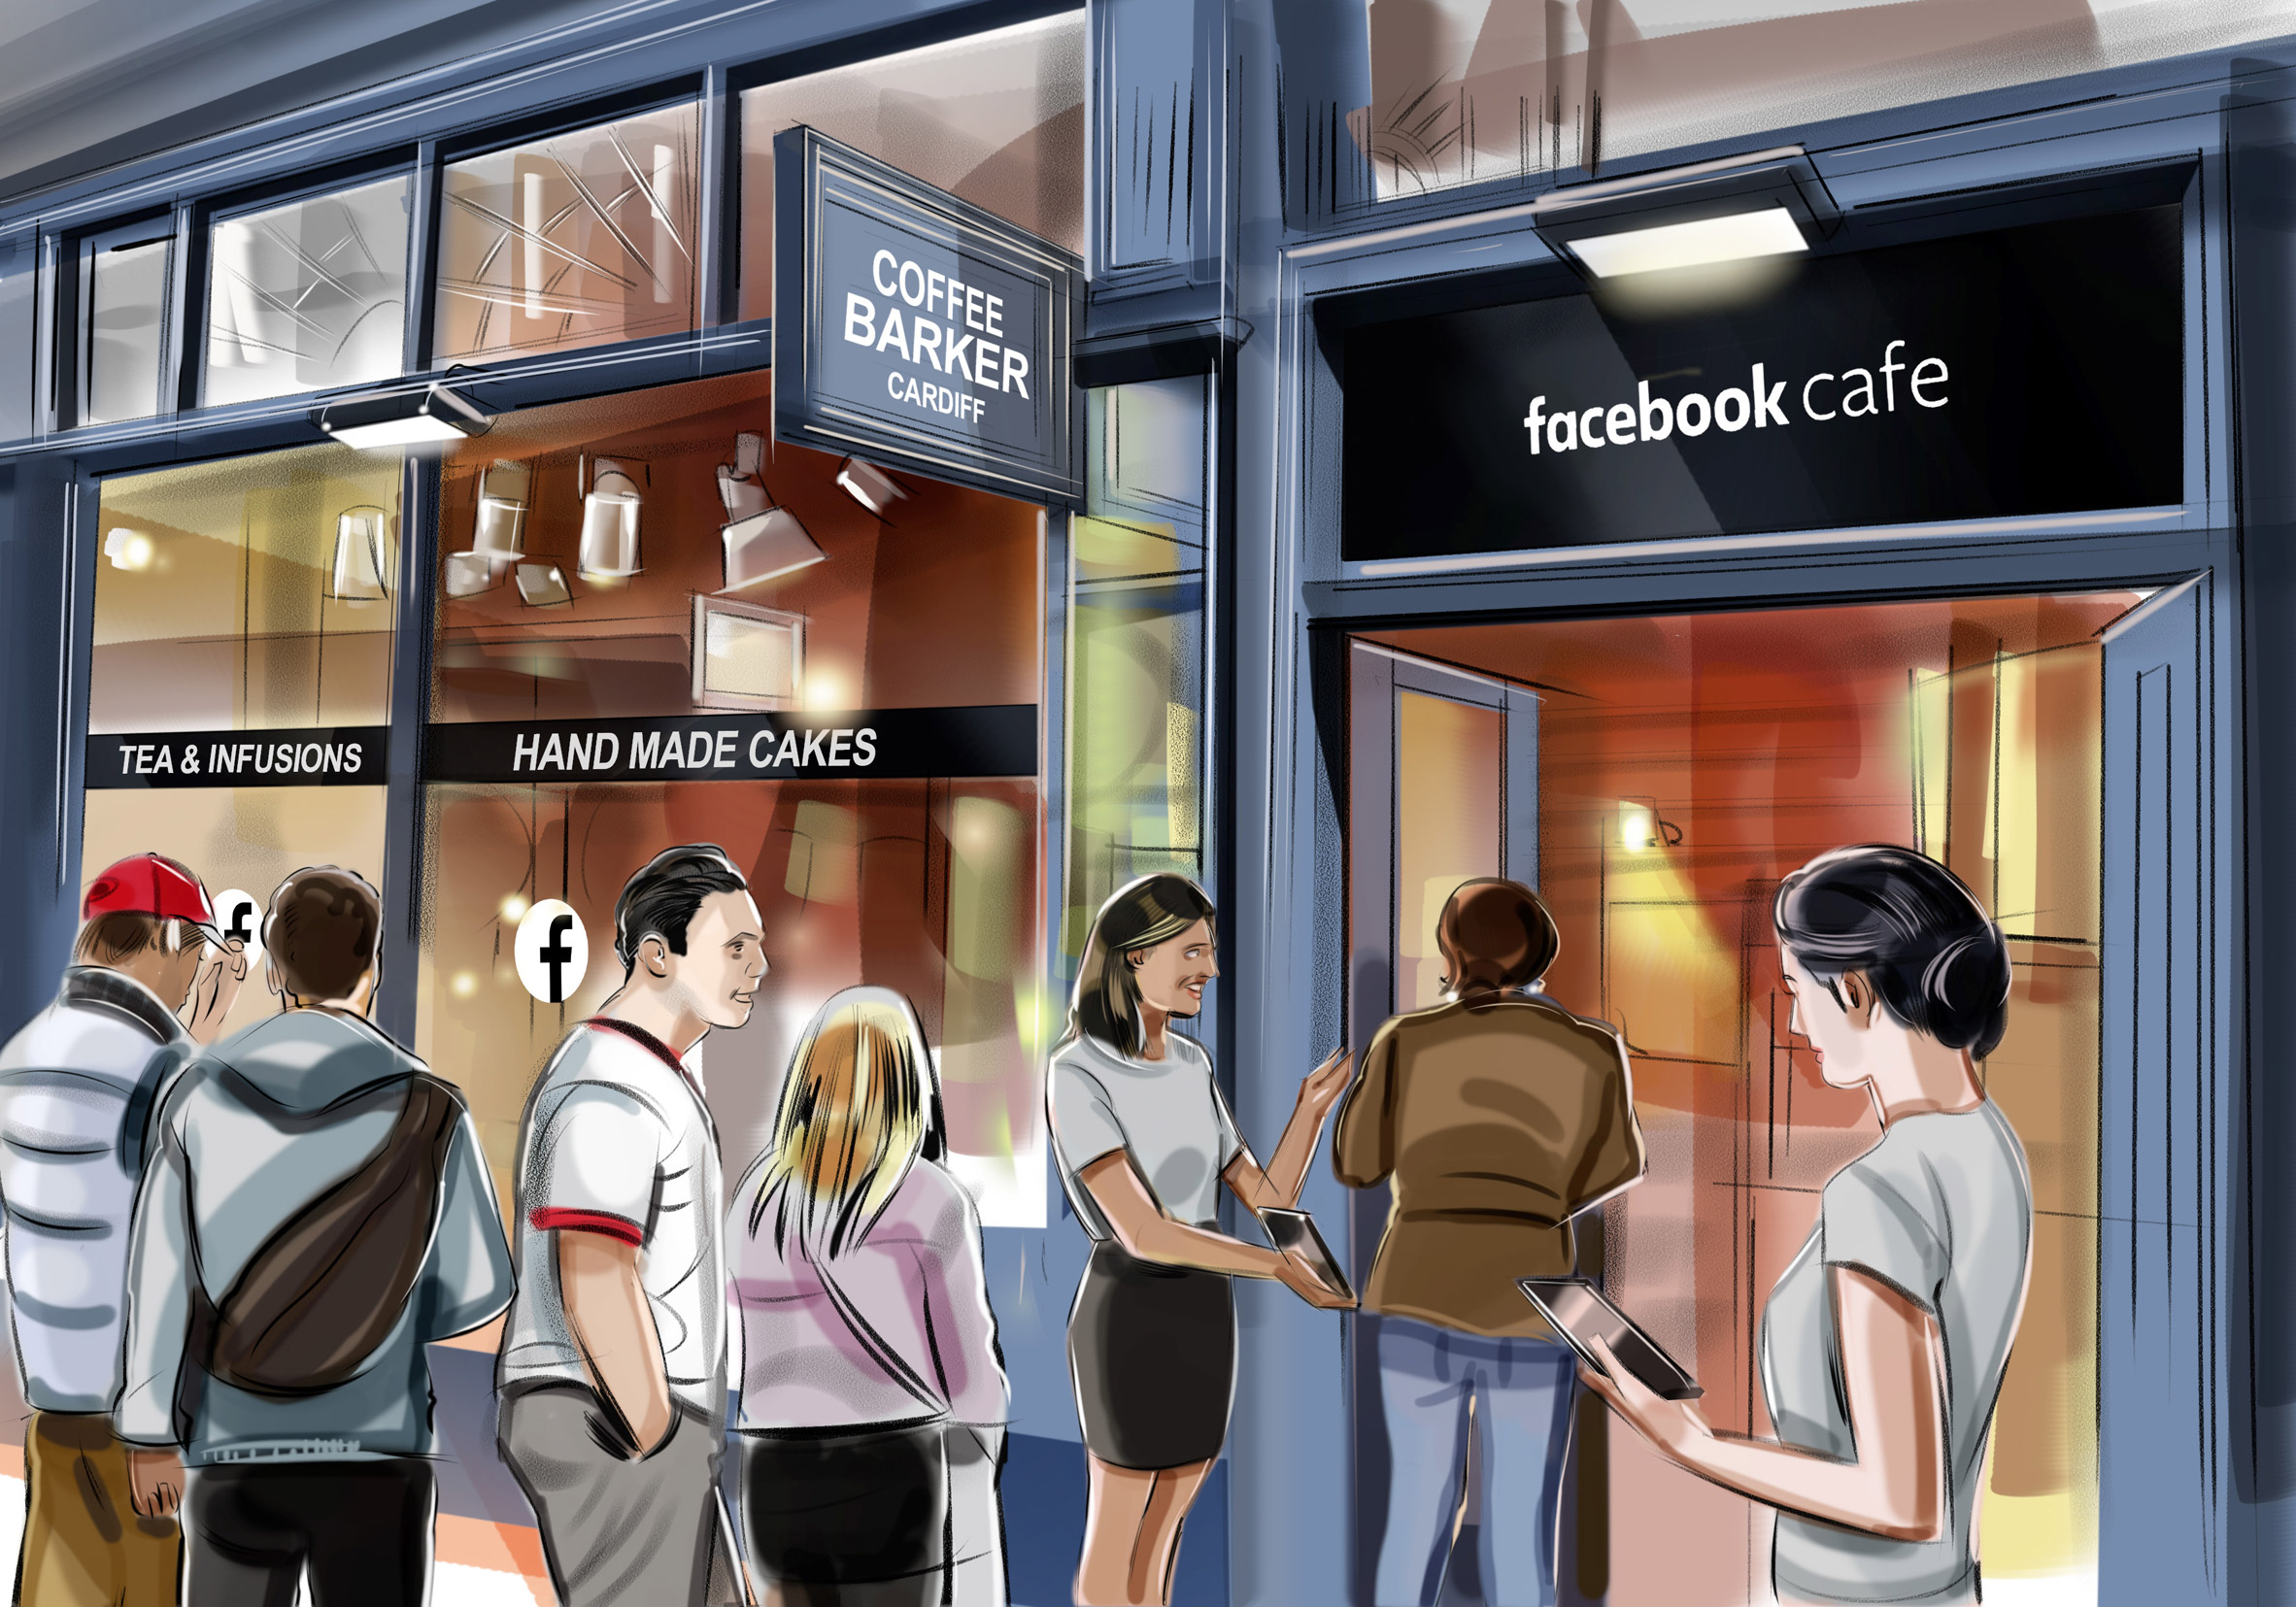 Facebook Cafes: Facebook to open pop-up cafes in UK